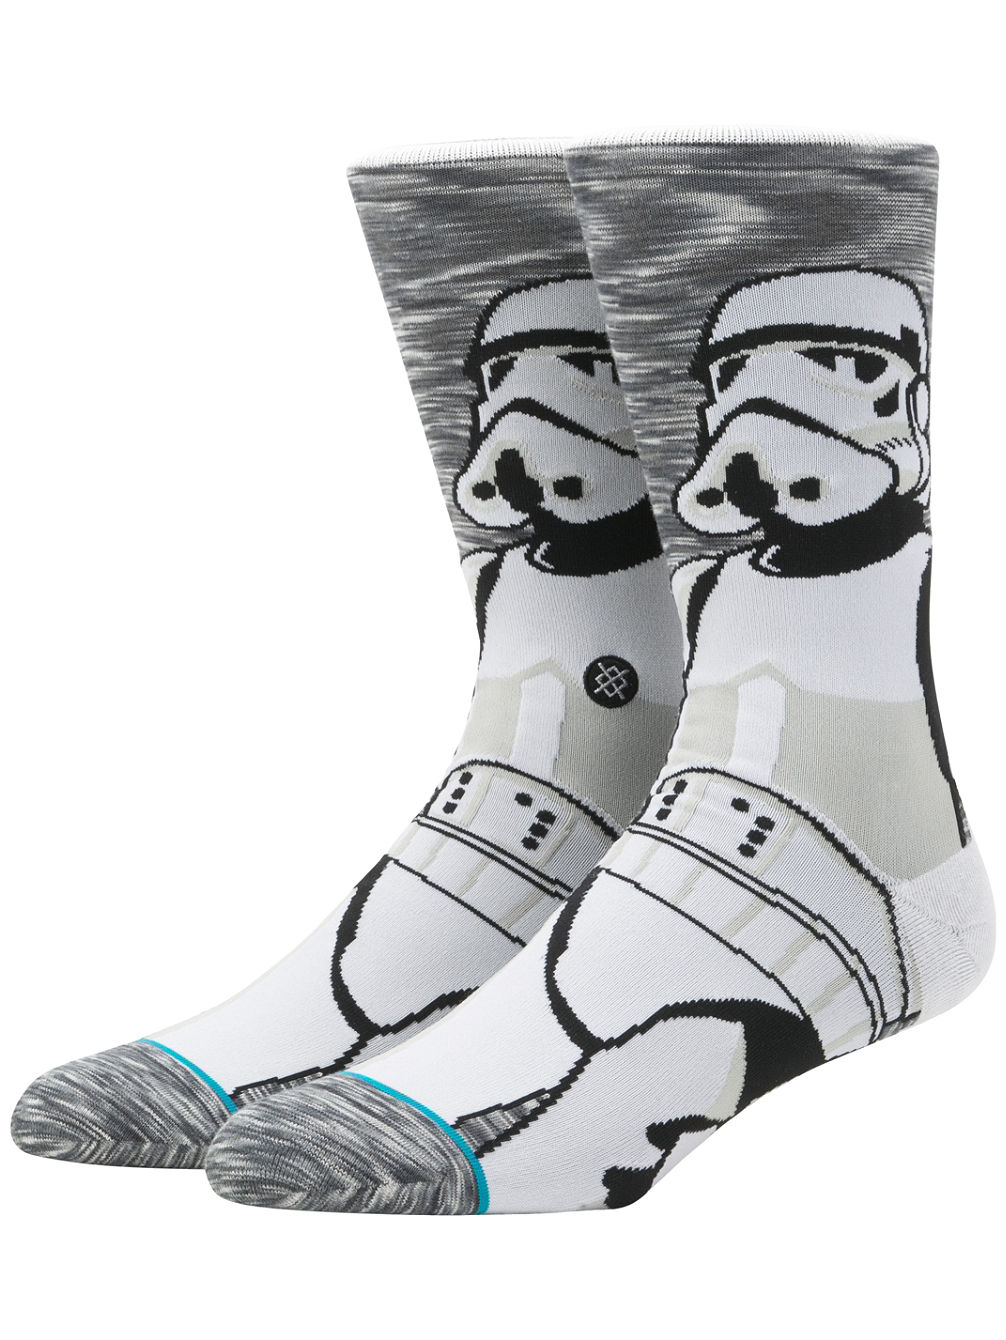 Empire Star Wars Socken